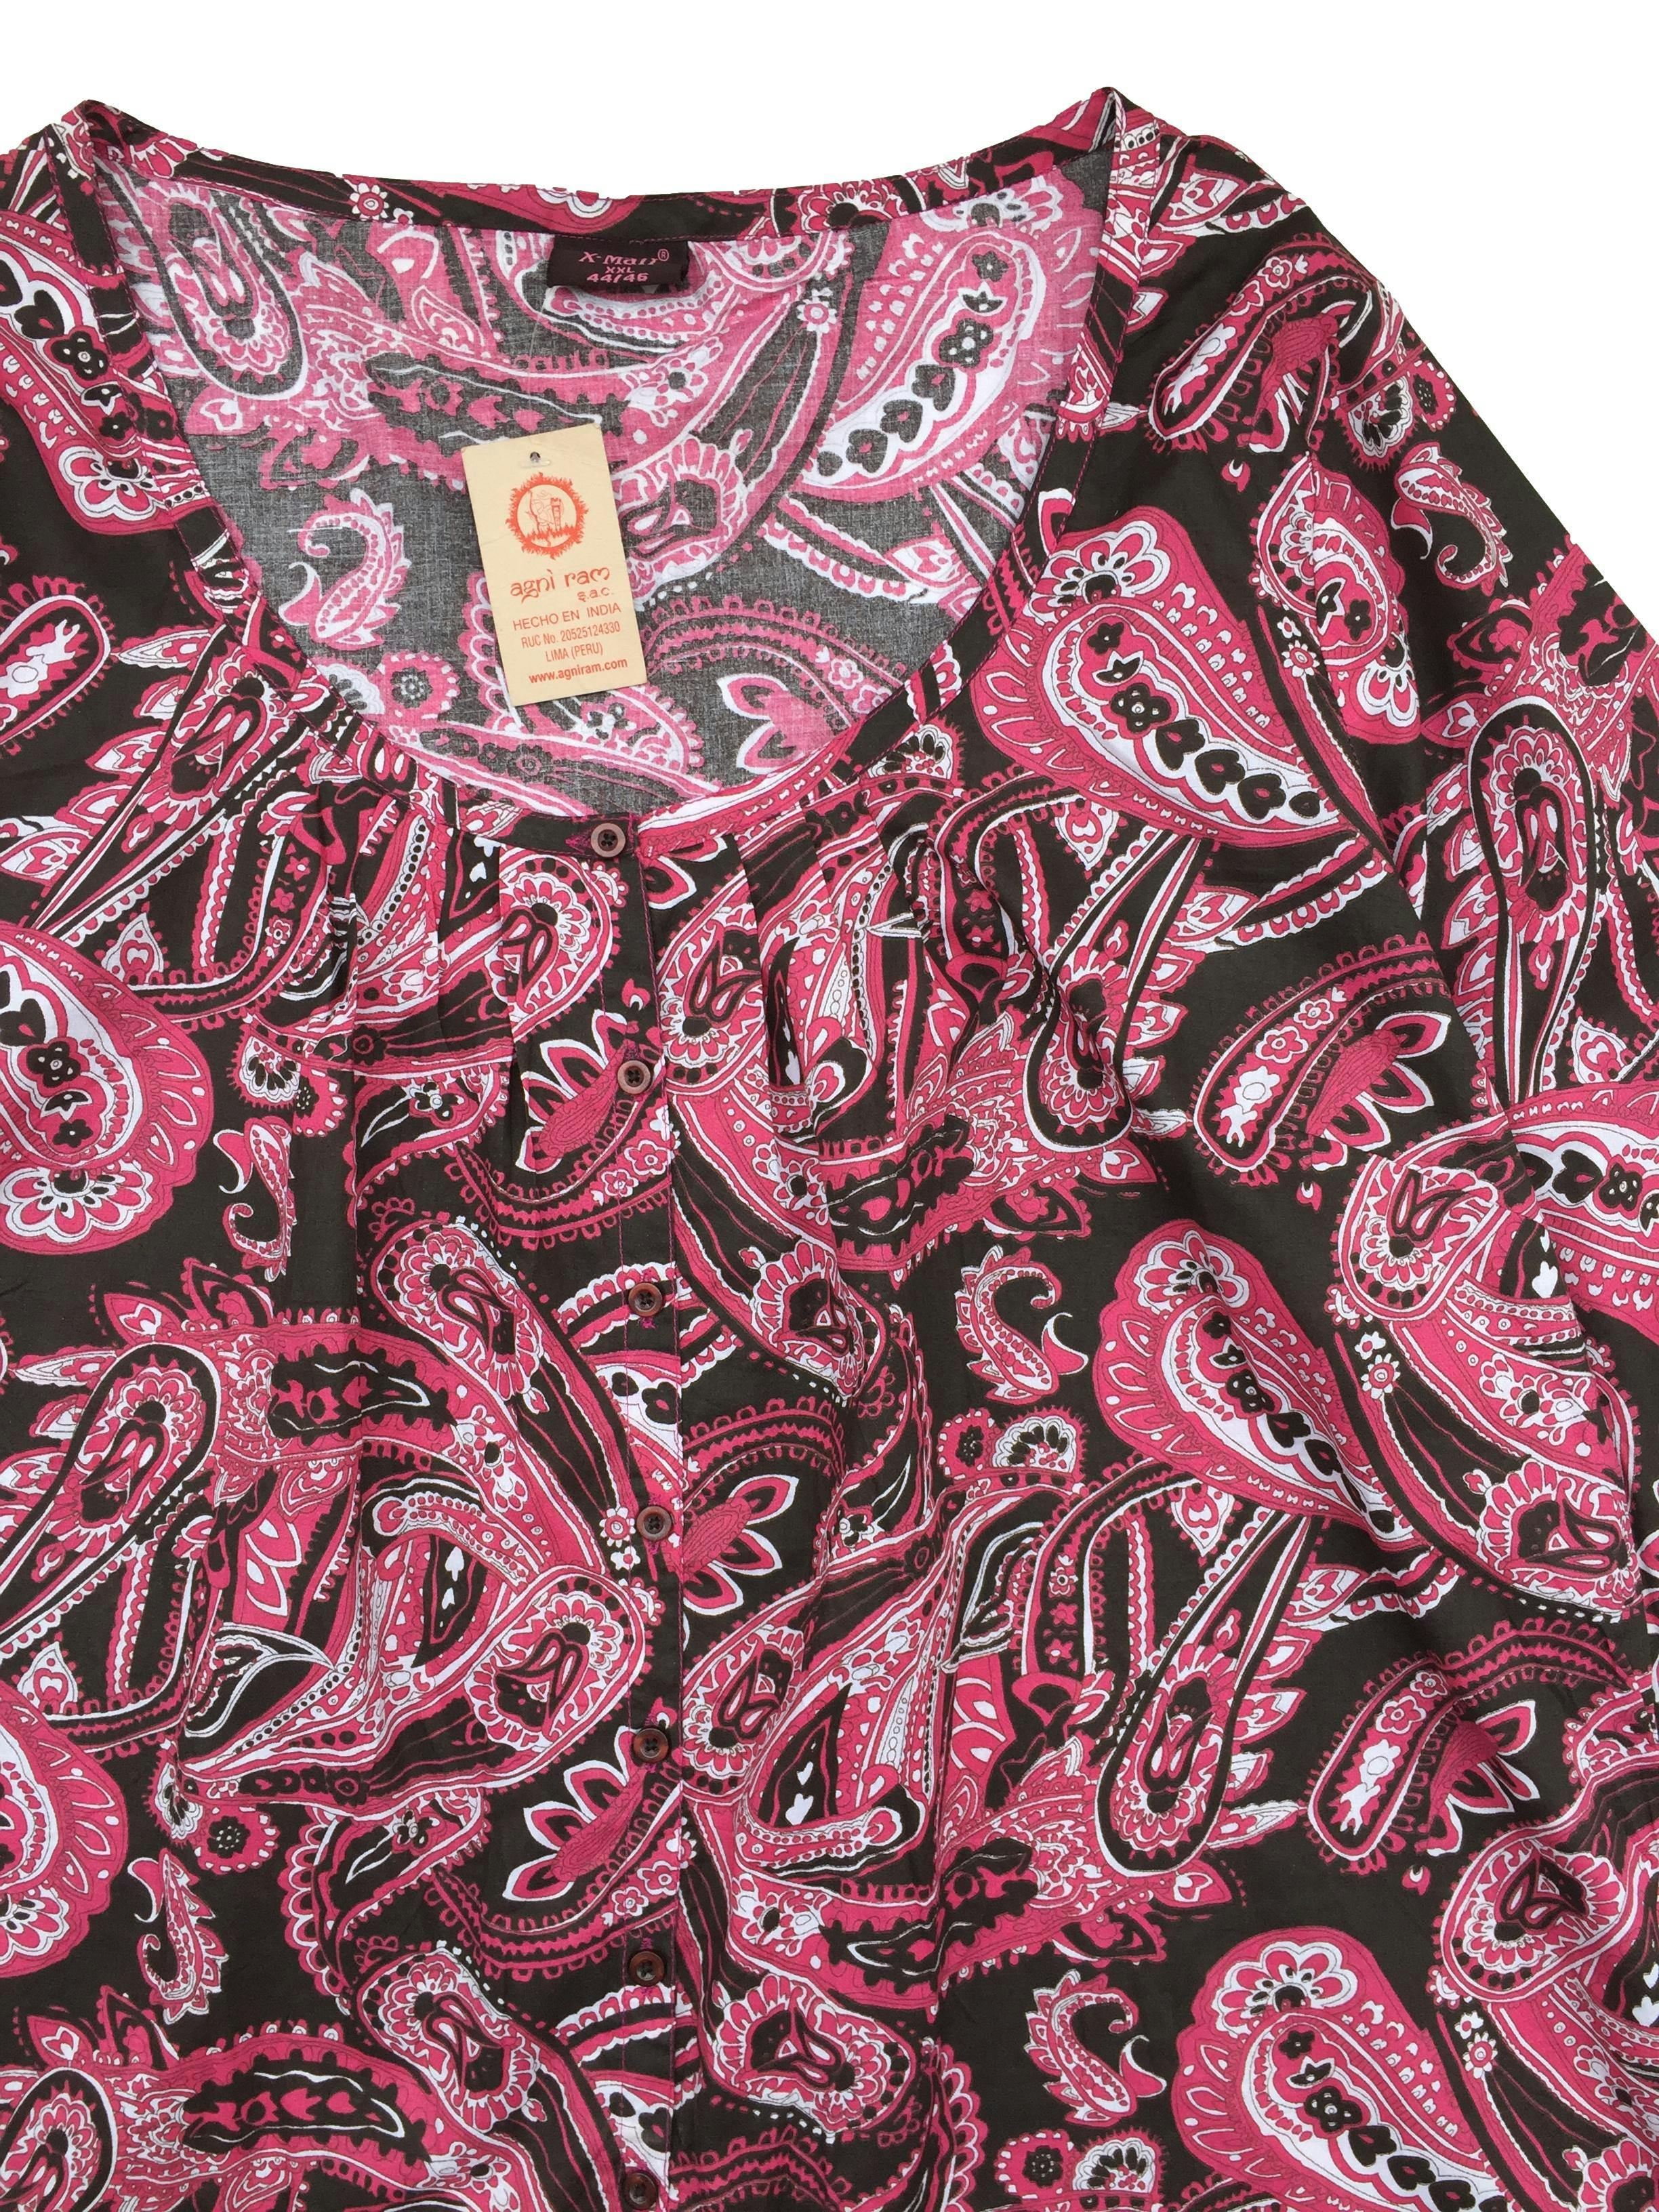 Blusa estampado paisley en tonos rosados, blanco y negro, botones delanteros. Busto: 120cm, Largo: 75cm. Nuevo con etiqueta.